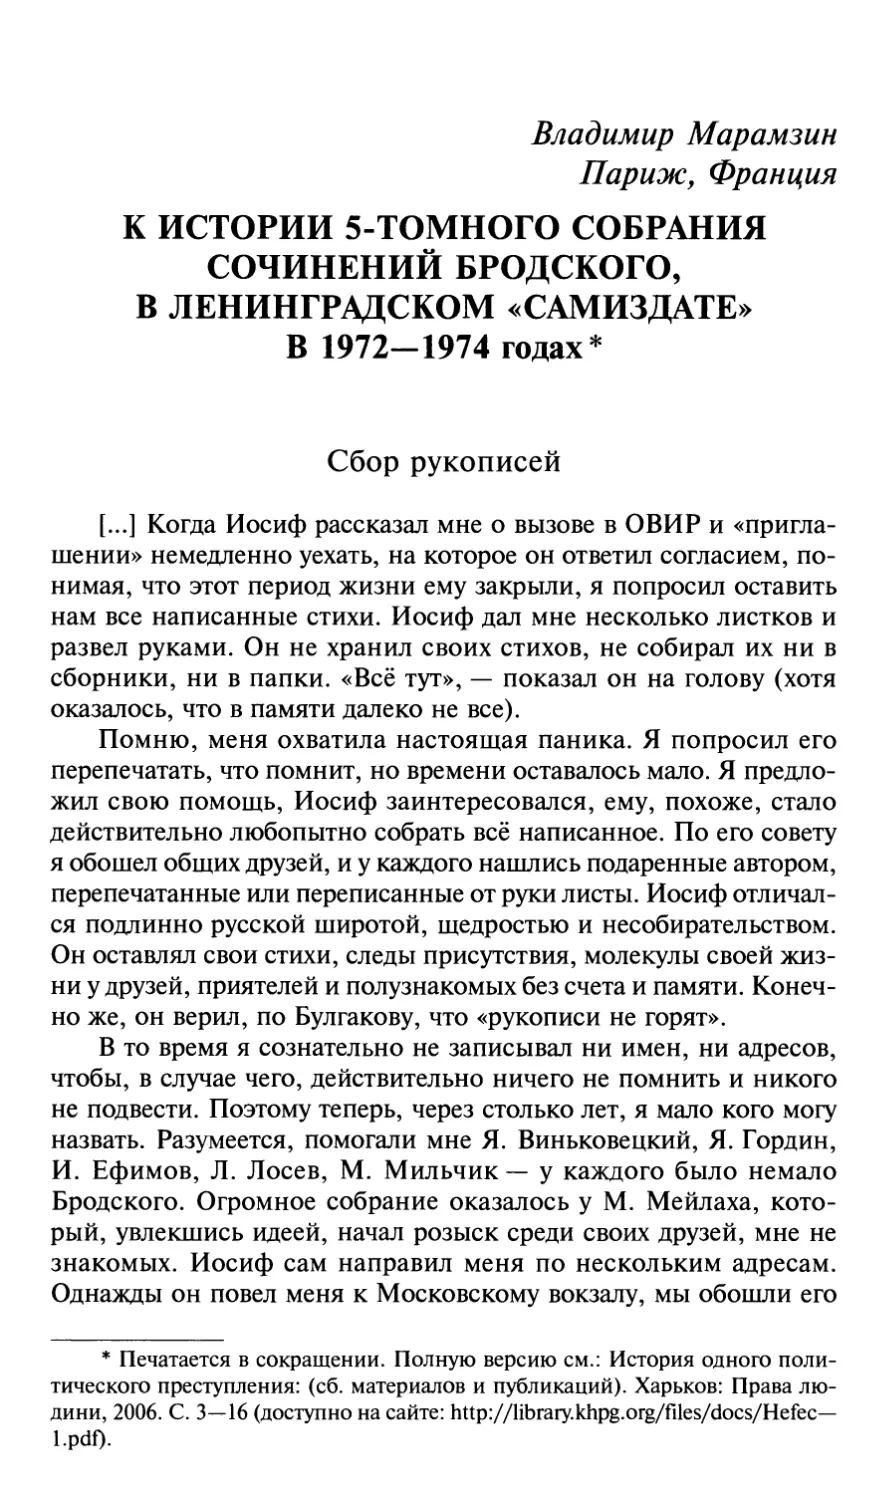 B. Марамзин. К истории 5-томного собрания сочинений Бродского в ленинградском «самиздате» в 1972—1974 годах